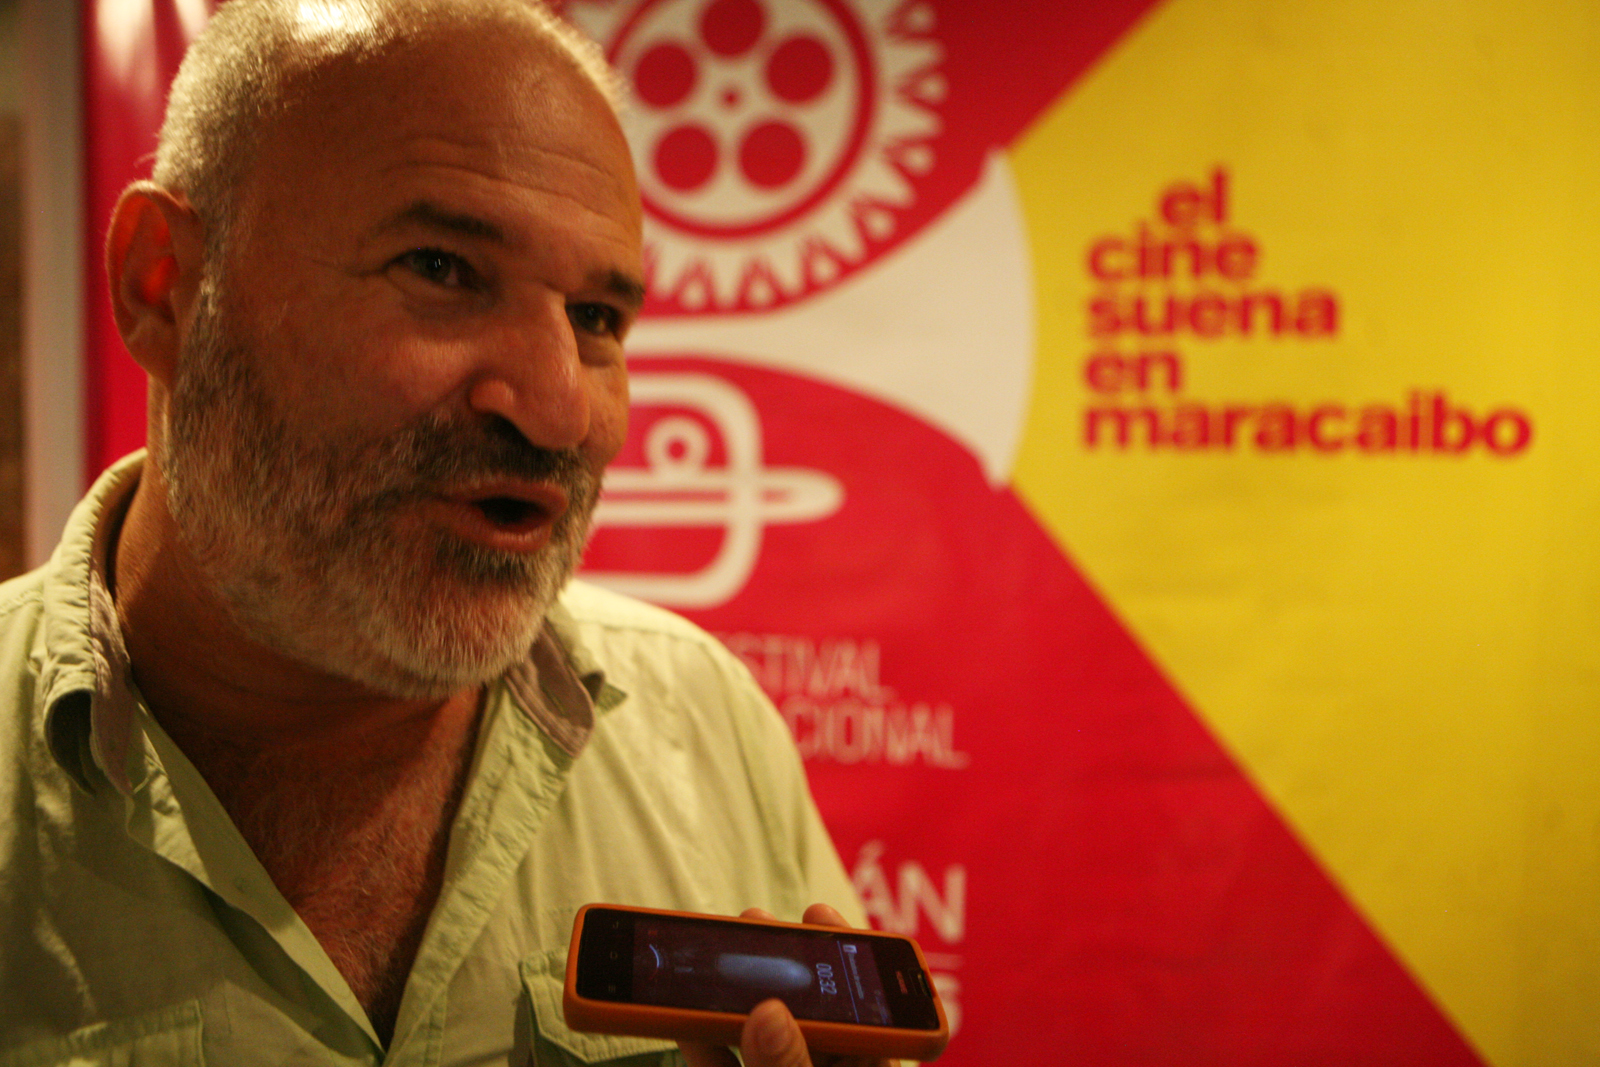 Ese sentir de propiedad, con sentido de orgullo del cine venezolano, a eso nos debemos nosotros y a eso me siento homenajeado”, destacó Frank Rojas